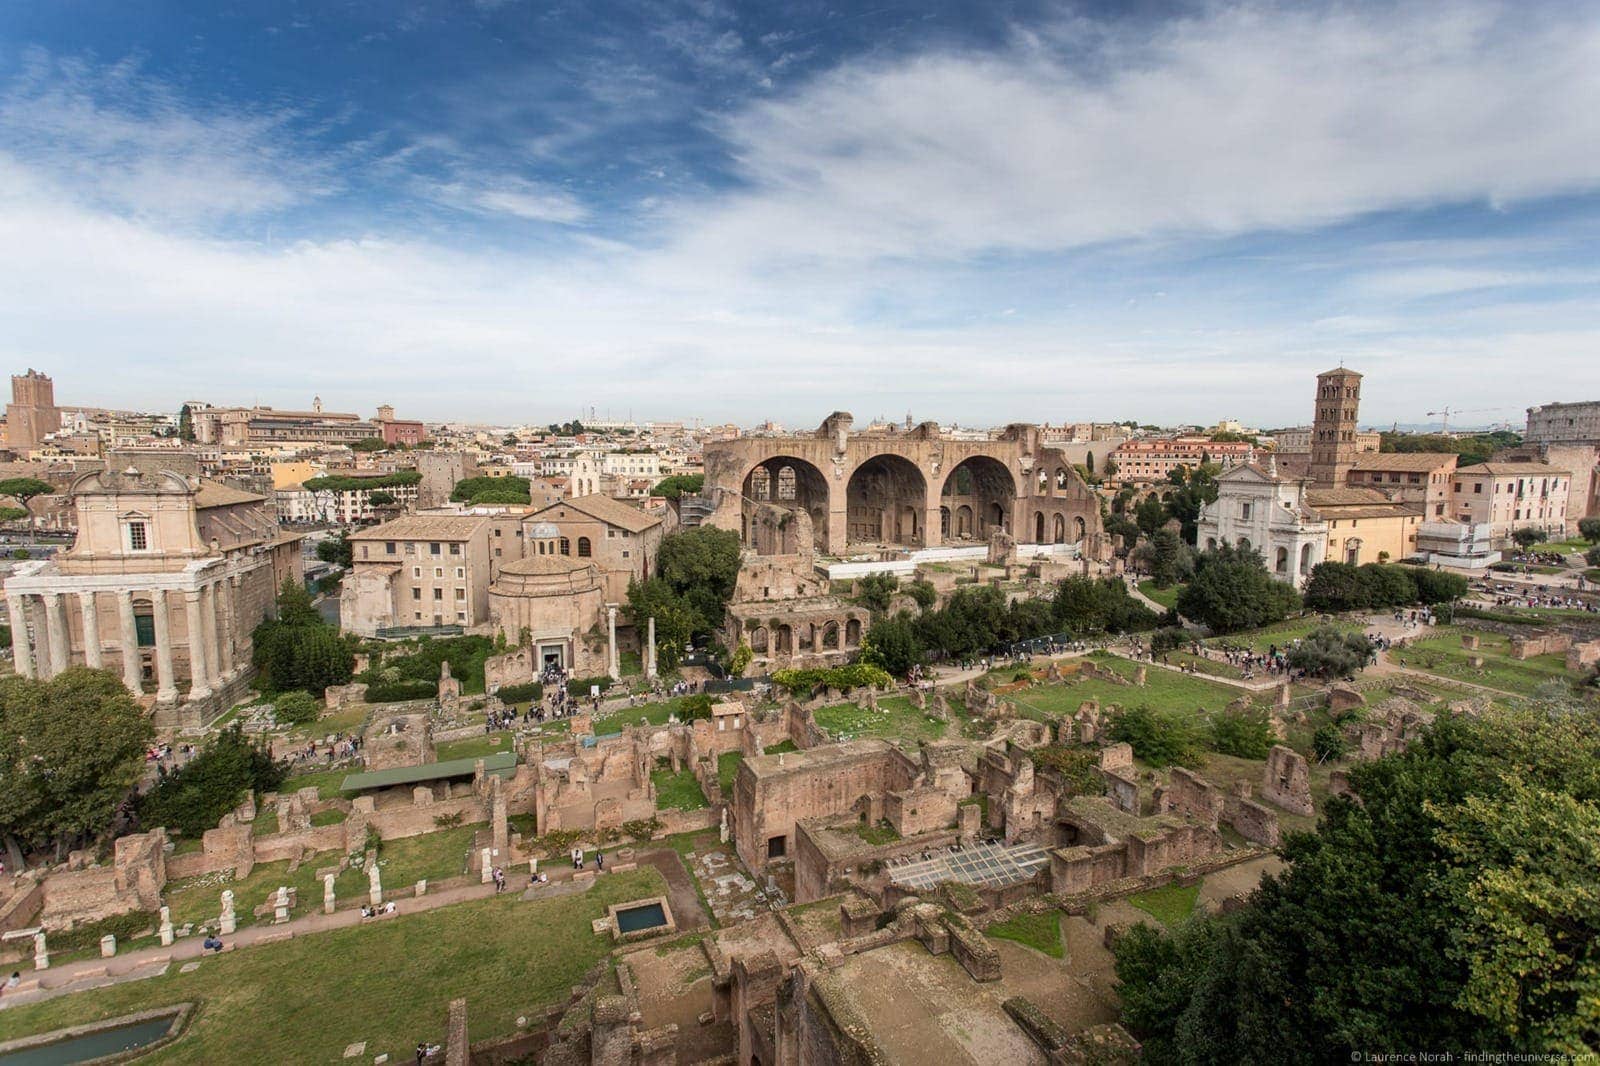  Forum romain 